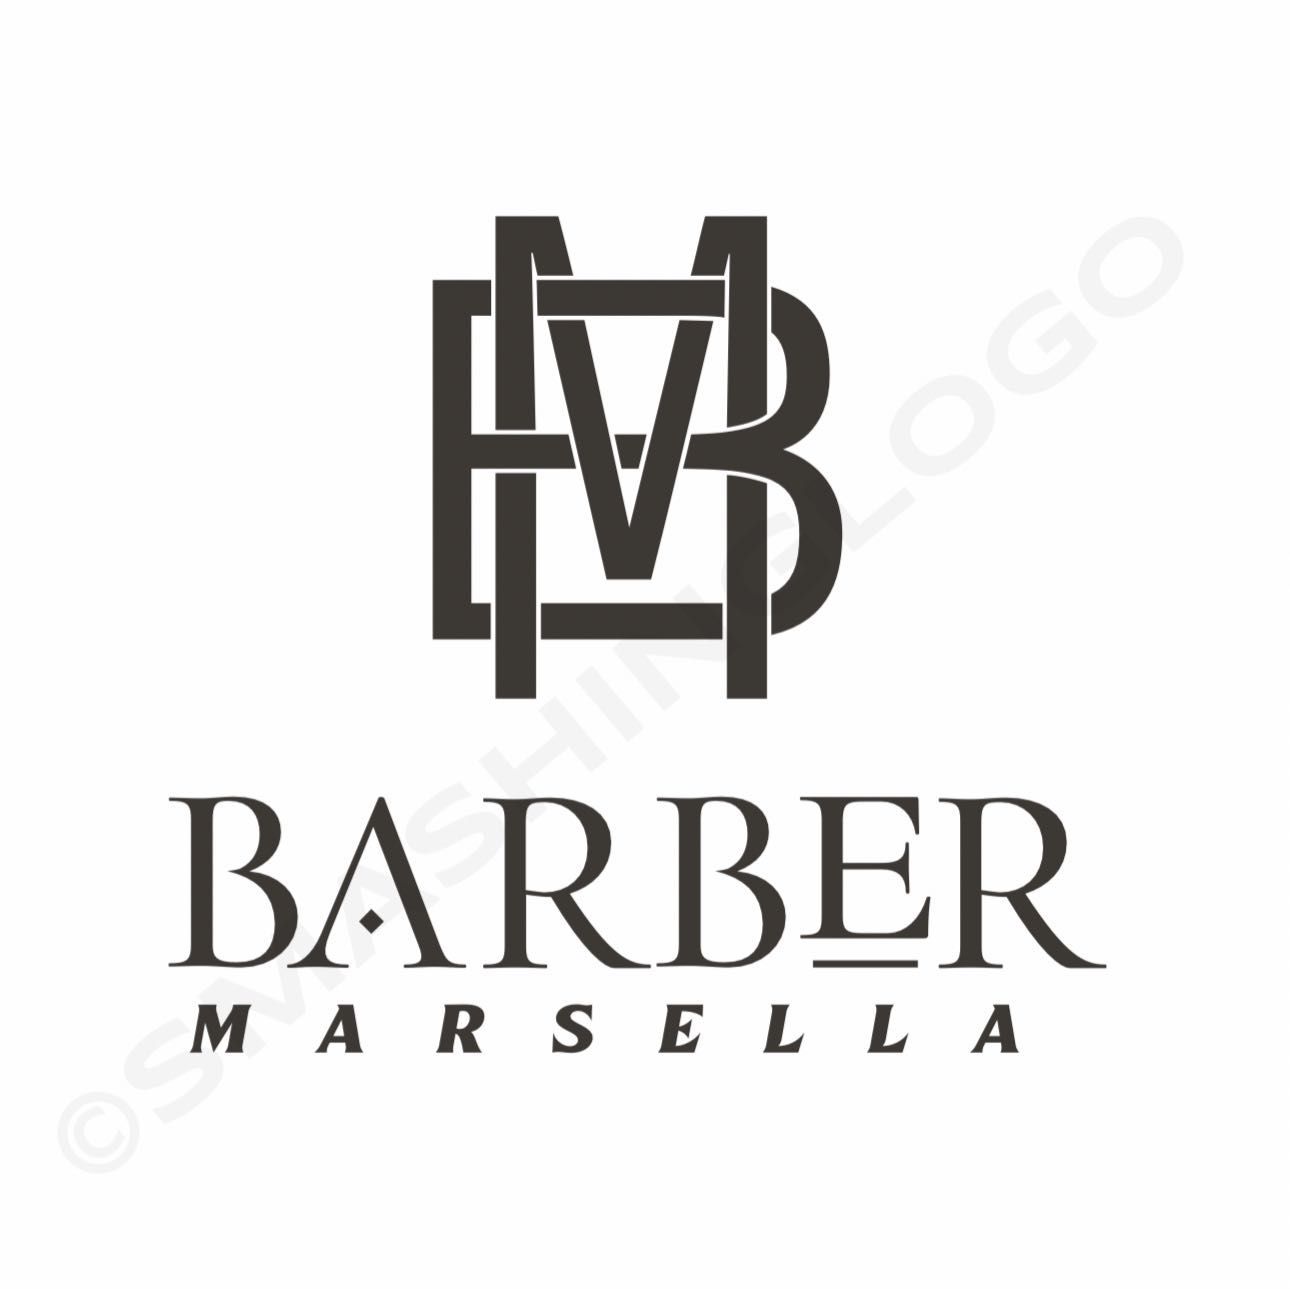 BARBER MARSELLA, Avenida vicente mortes alfonso 53, 46980, Paterna